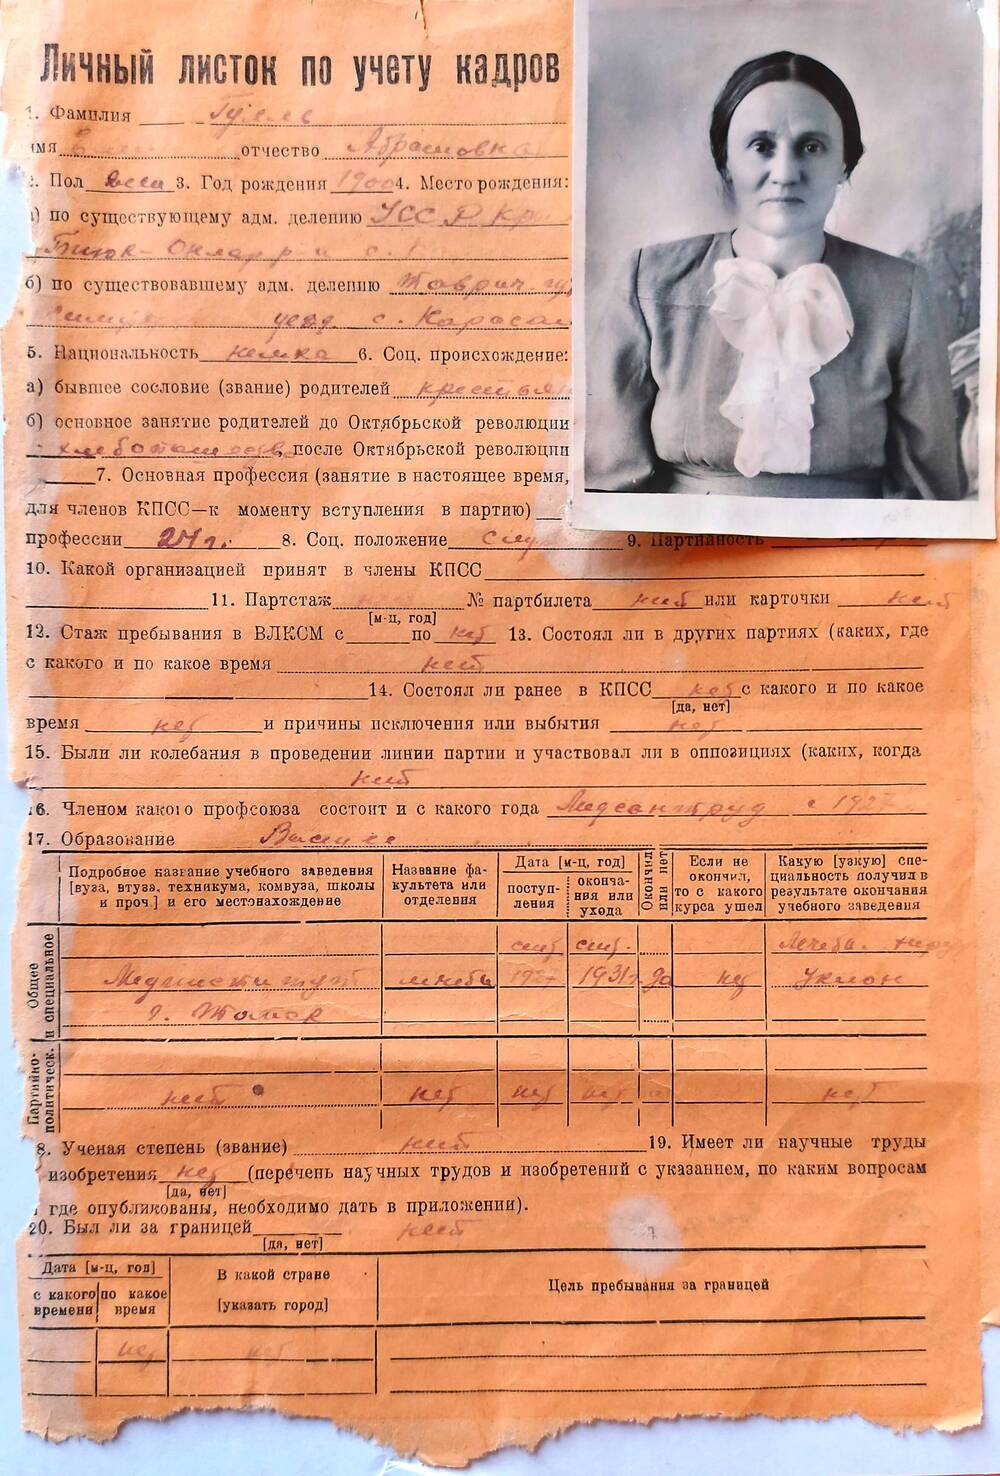 Листок личный по учету кадров Гулль Елены Абрамовны, 1900 года рождения, Заслуженного врача РСФСР, члена КПСС с 1957 г.